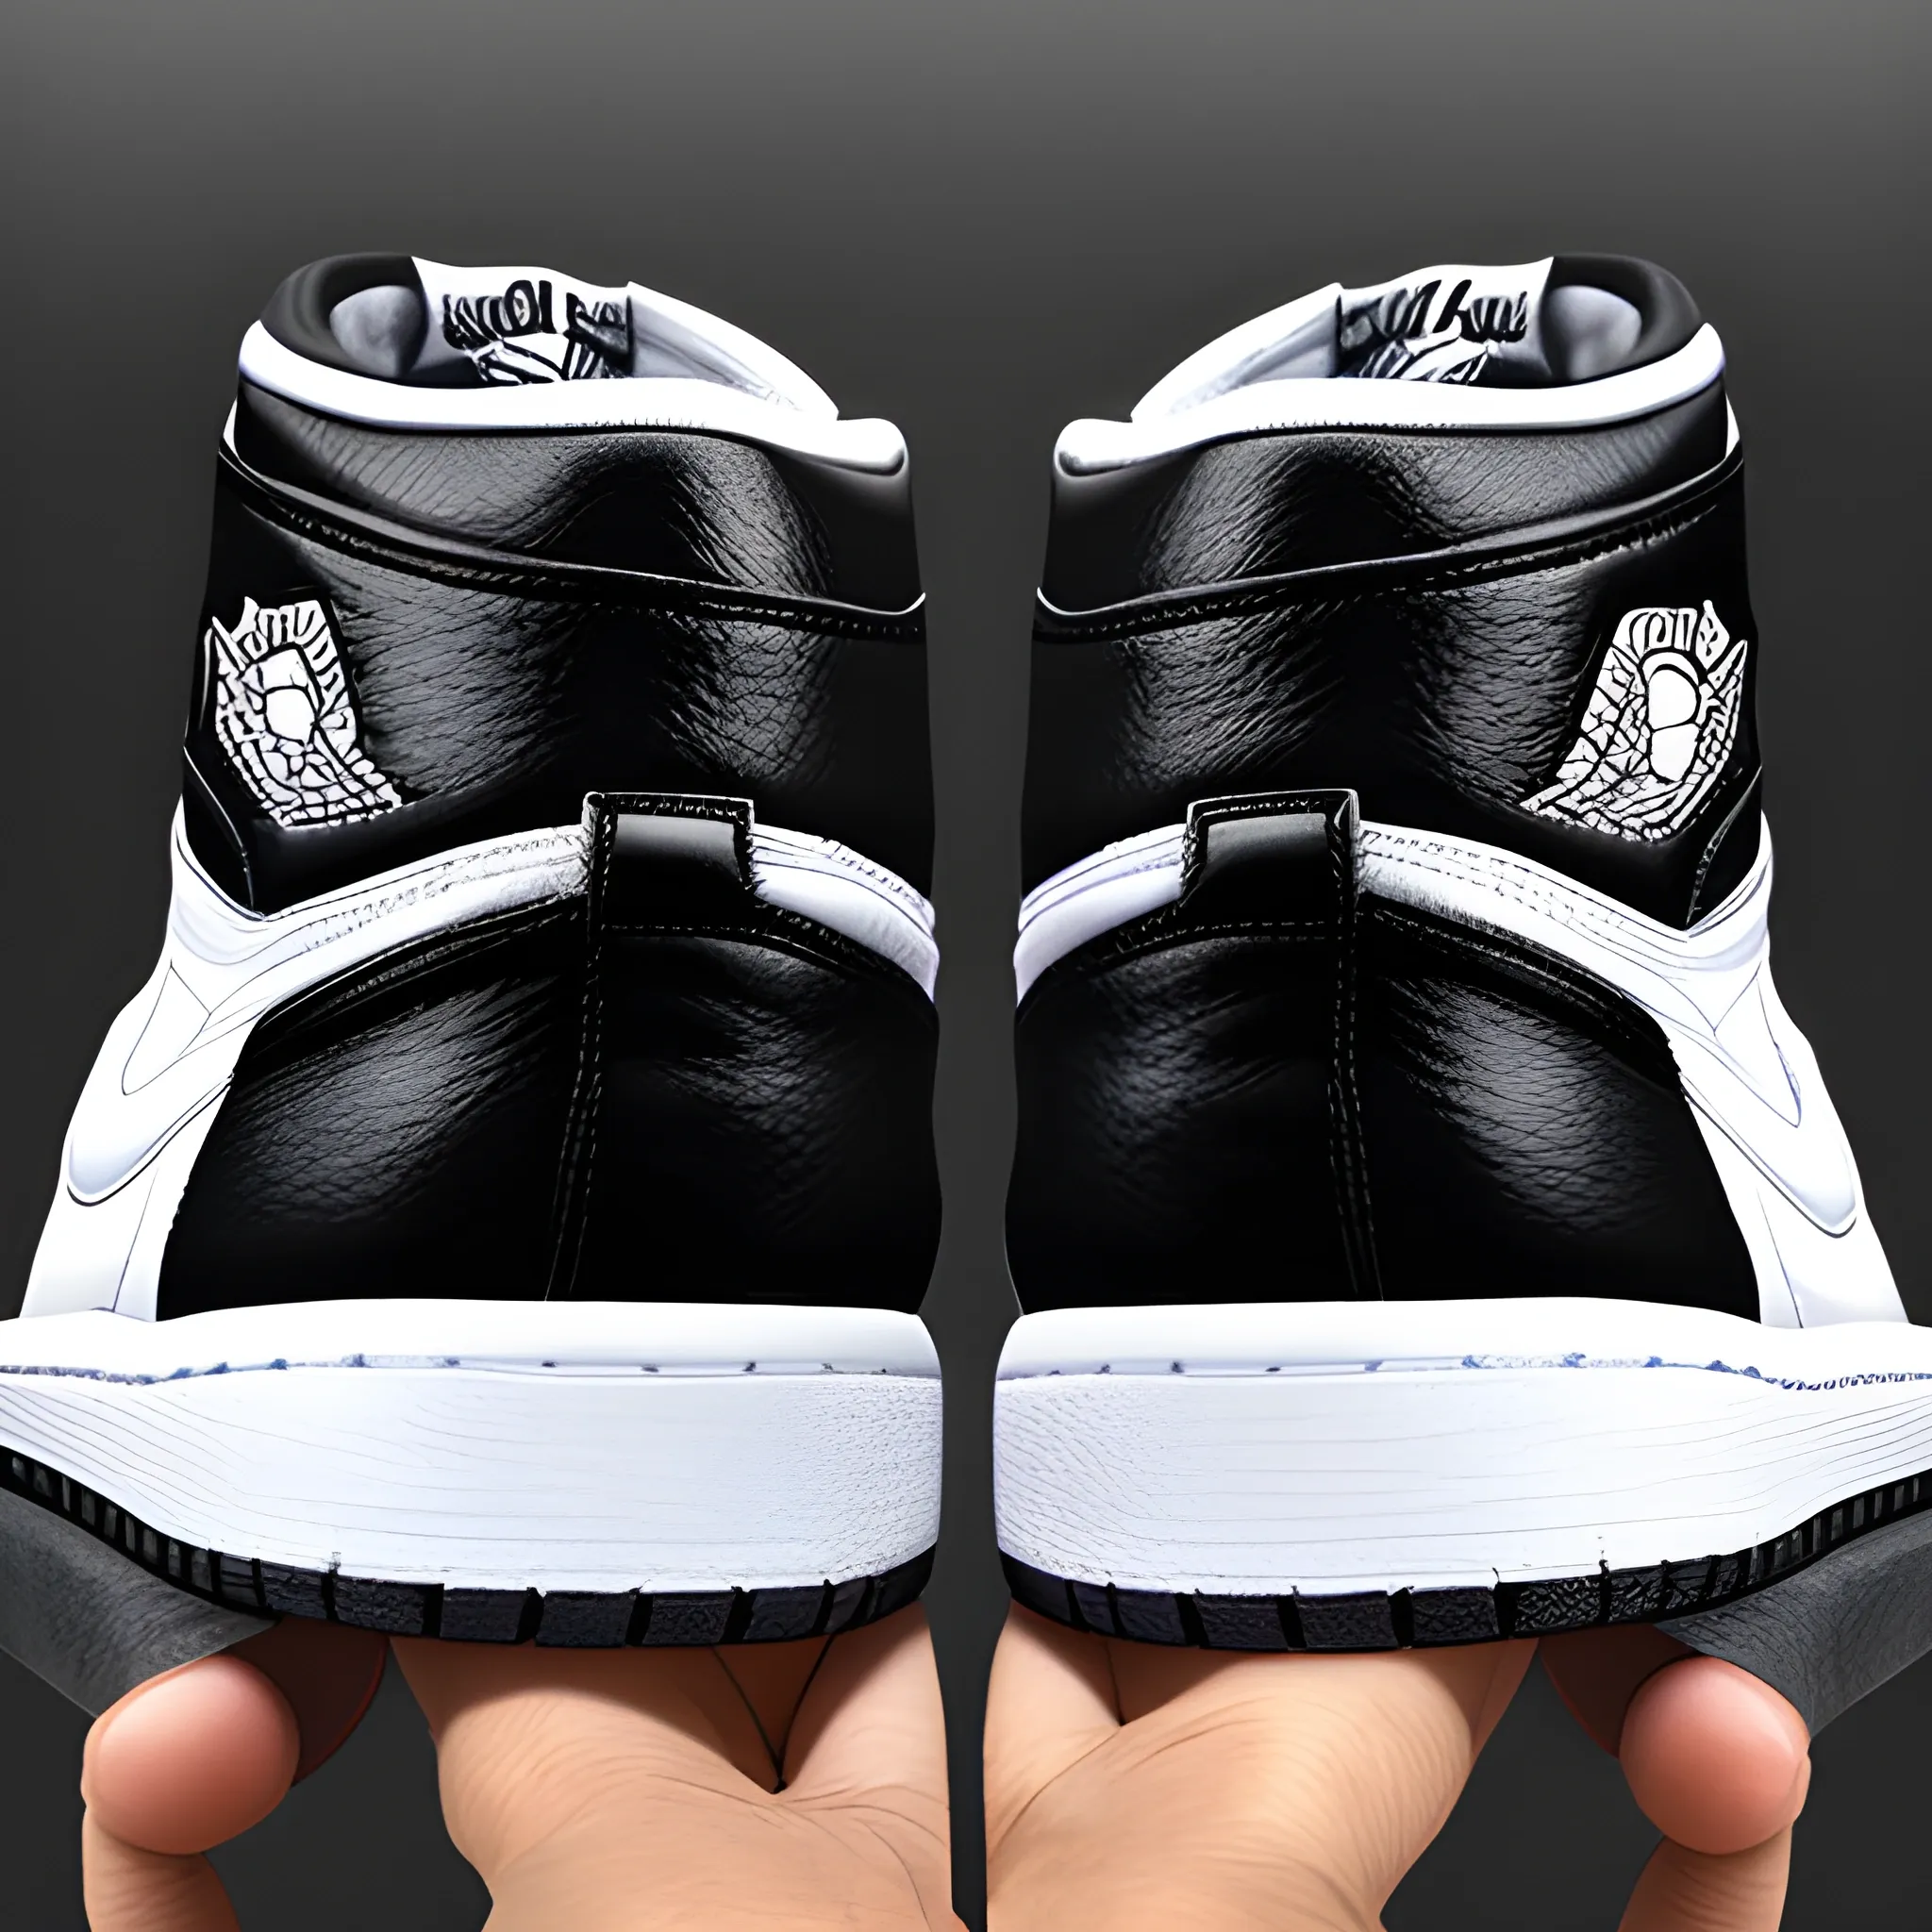 realistic black and white air jordan 1 sneakers
